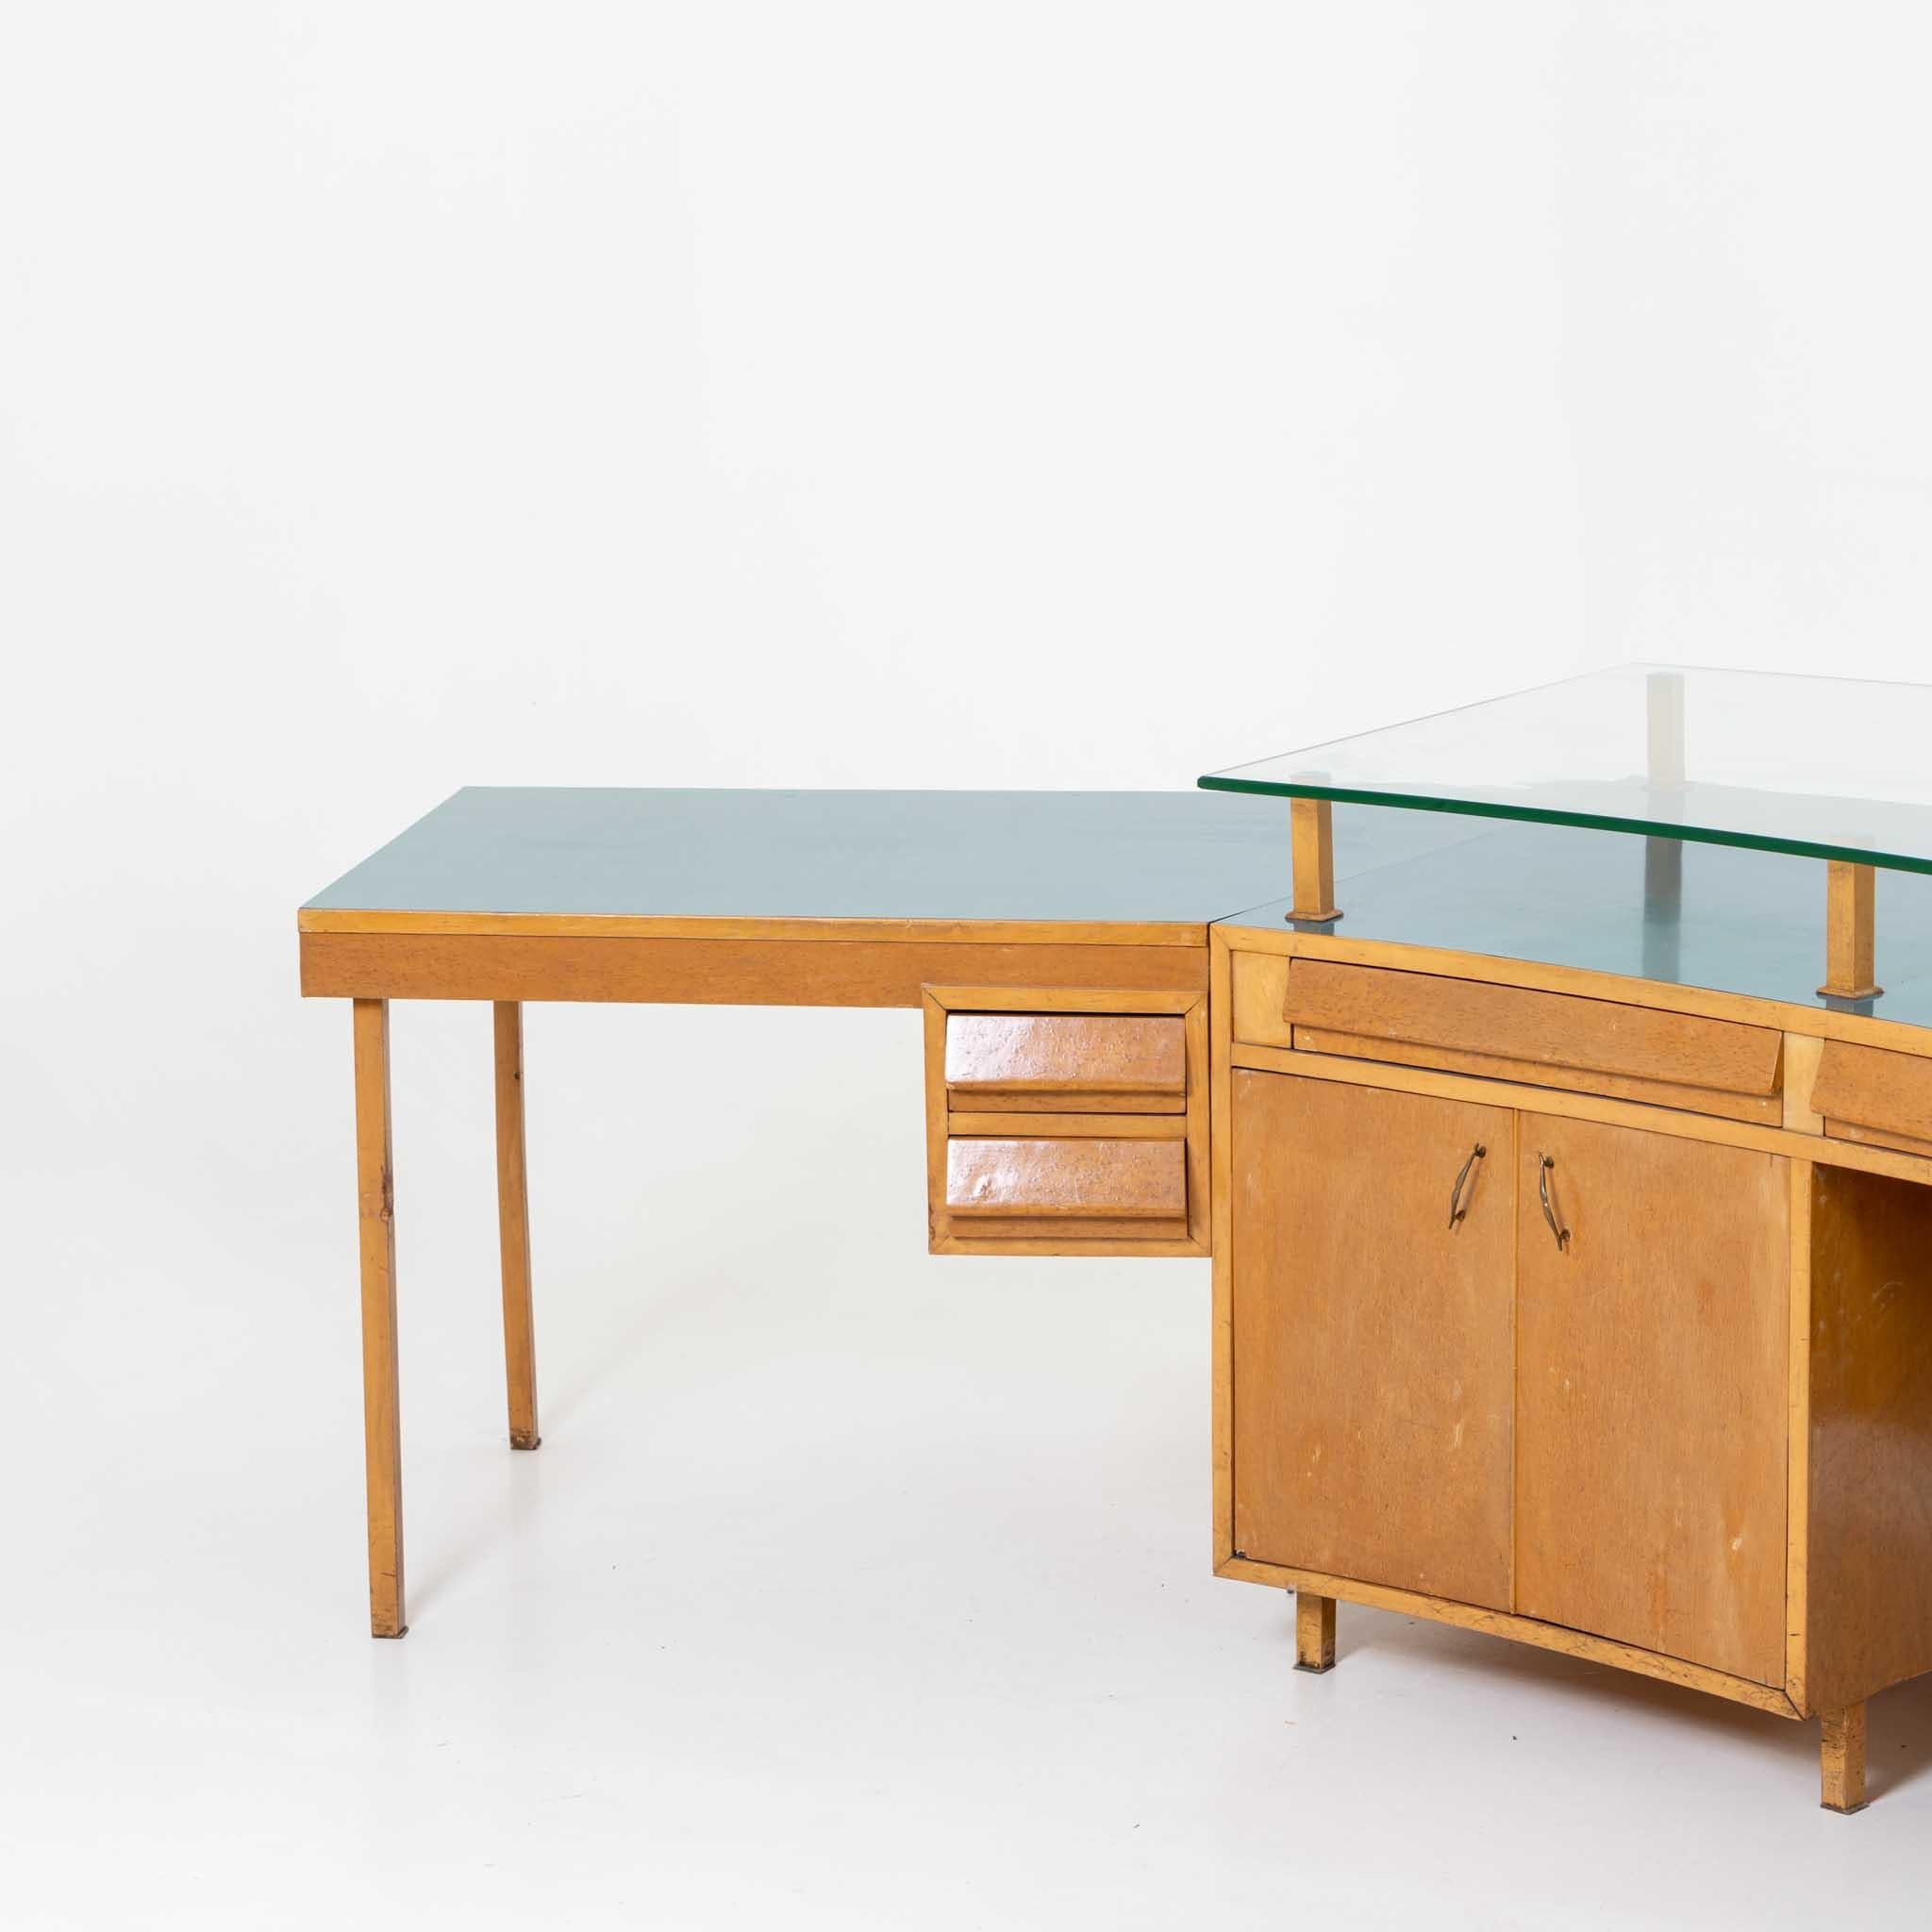 Italian Studio Desk, designed by Vittorio Armellini, Italy Mid-20th Century For Sale